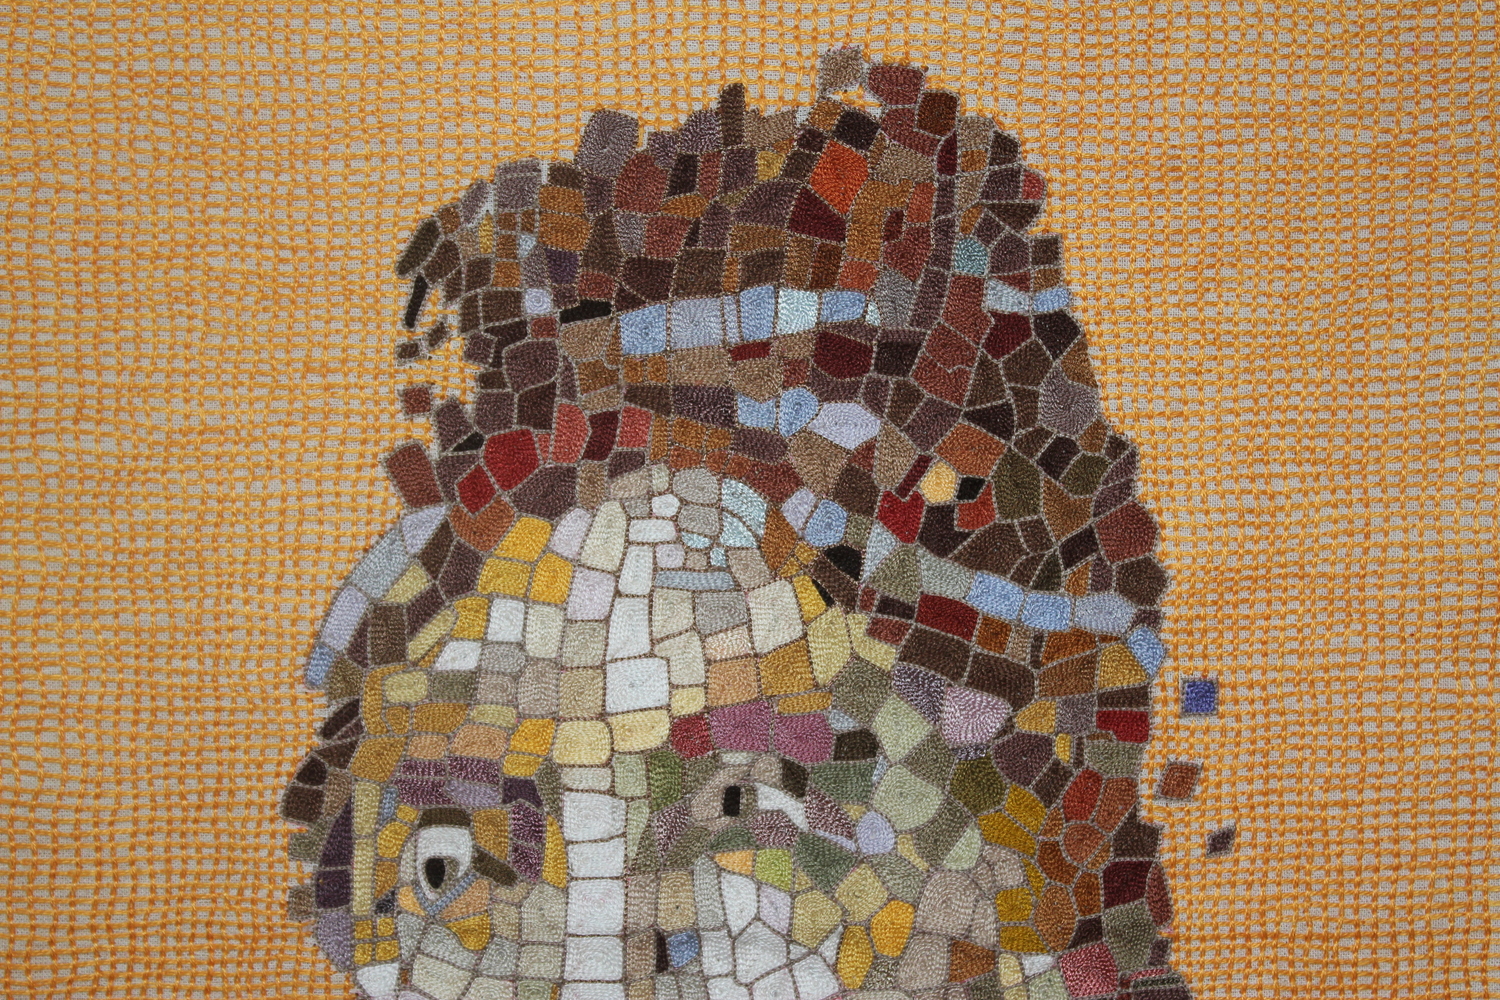 Mosaic I